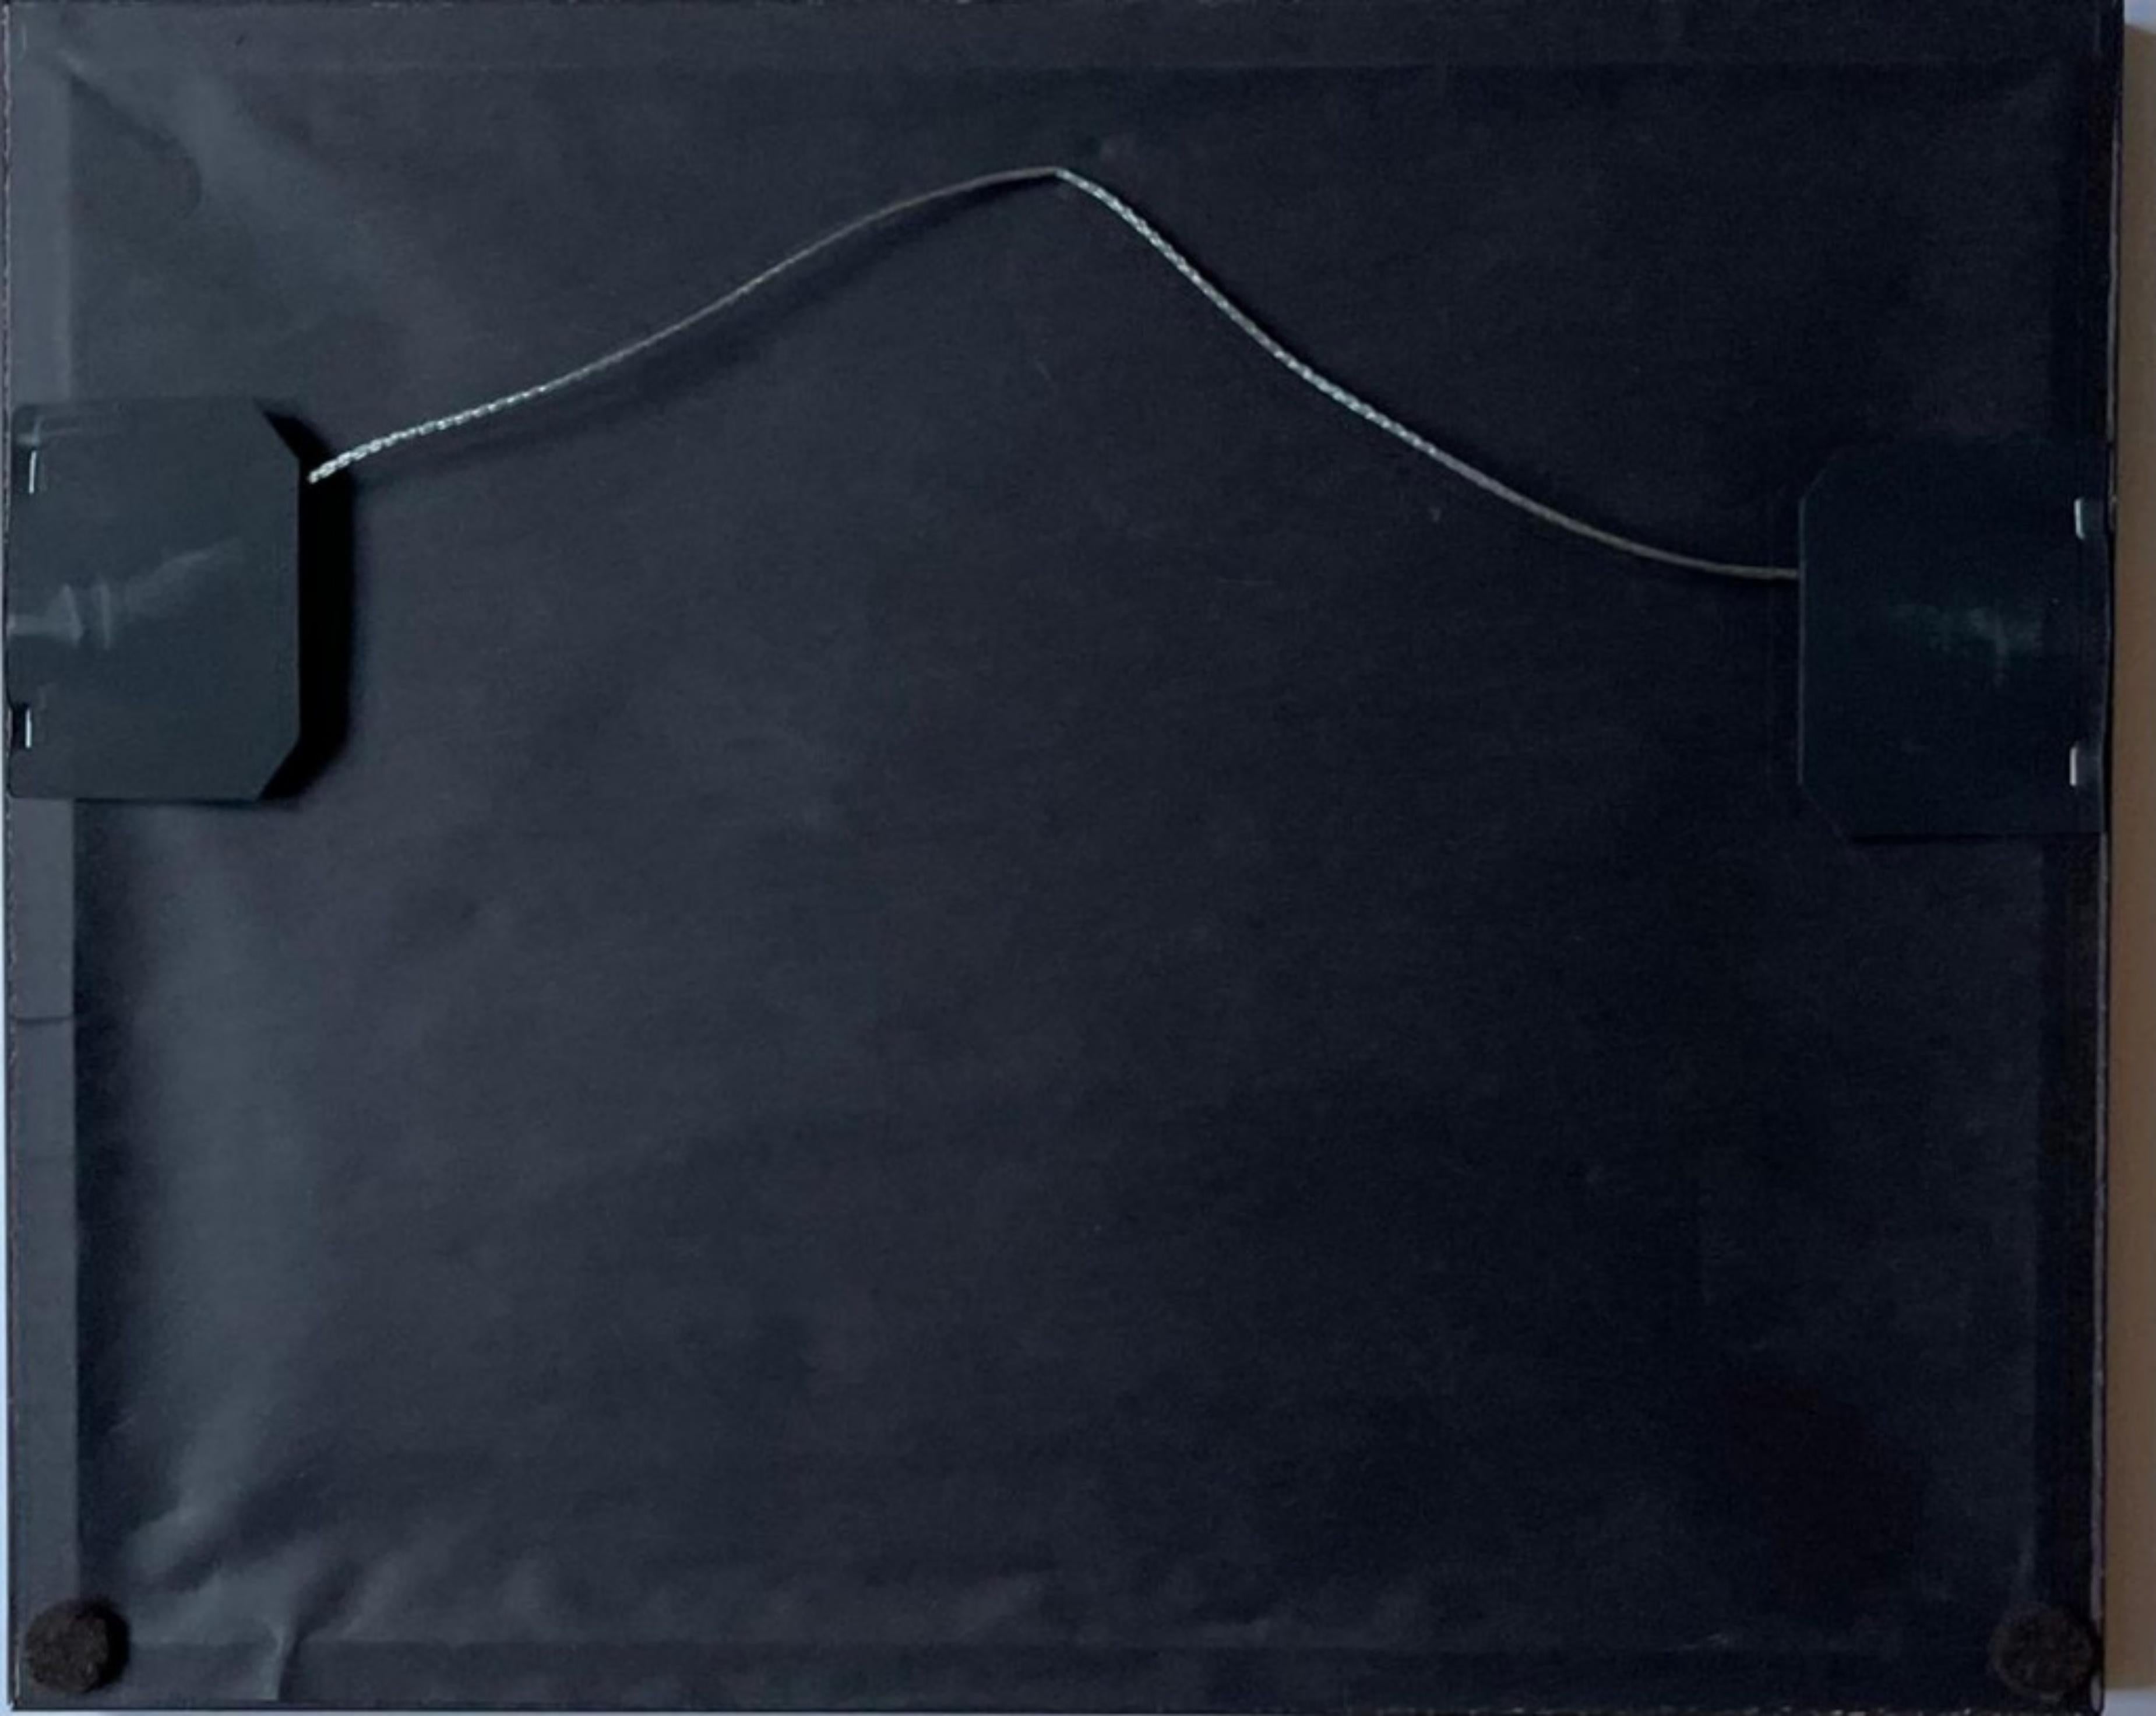 Michael Childers
Andy Warhol in New York, 1976, 2007
Fotodruck
Signiert und nummeriert 8/60 auf der Vorderseite in schwarzem Filzstift
Inklusive Rahmen
Dieses Bild gehört zu einer Reihe von Porträts von Andy Warhol, die Michael Childers, der